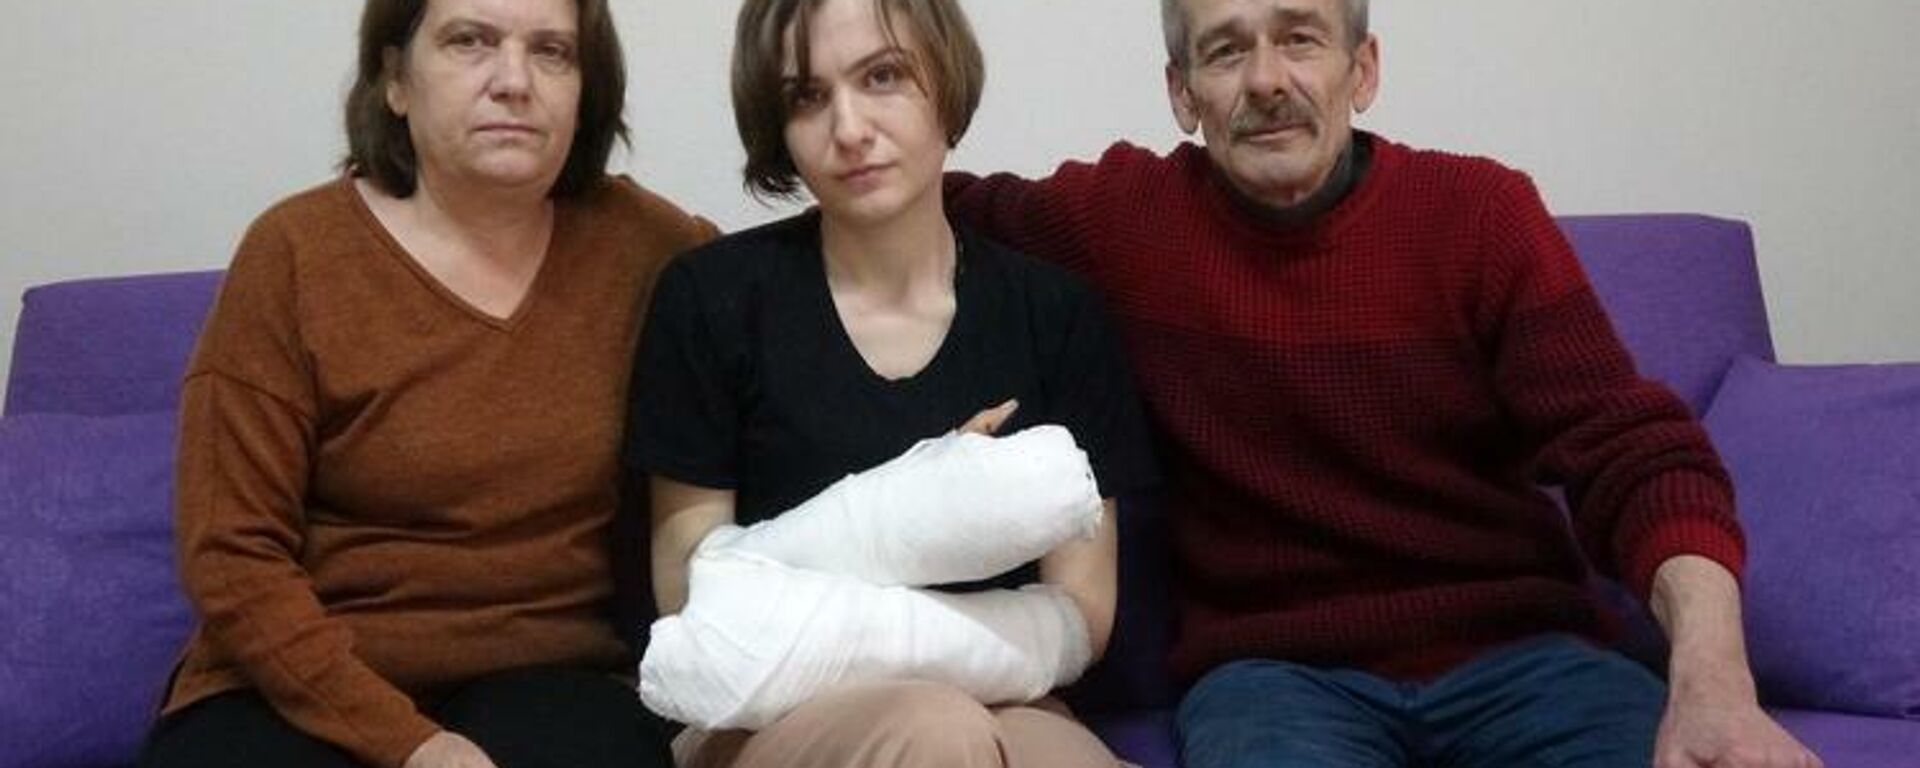 Eski eşinin baltalı saldırısında 5 parmağı kopan kadın ve ailesi - Sputnik Türkiye, 1920, 25.02.2022